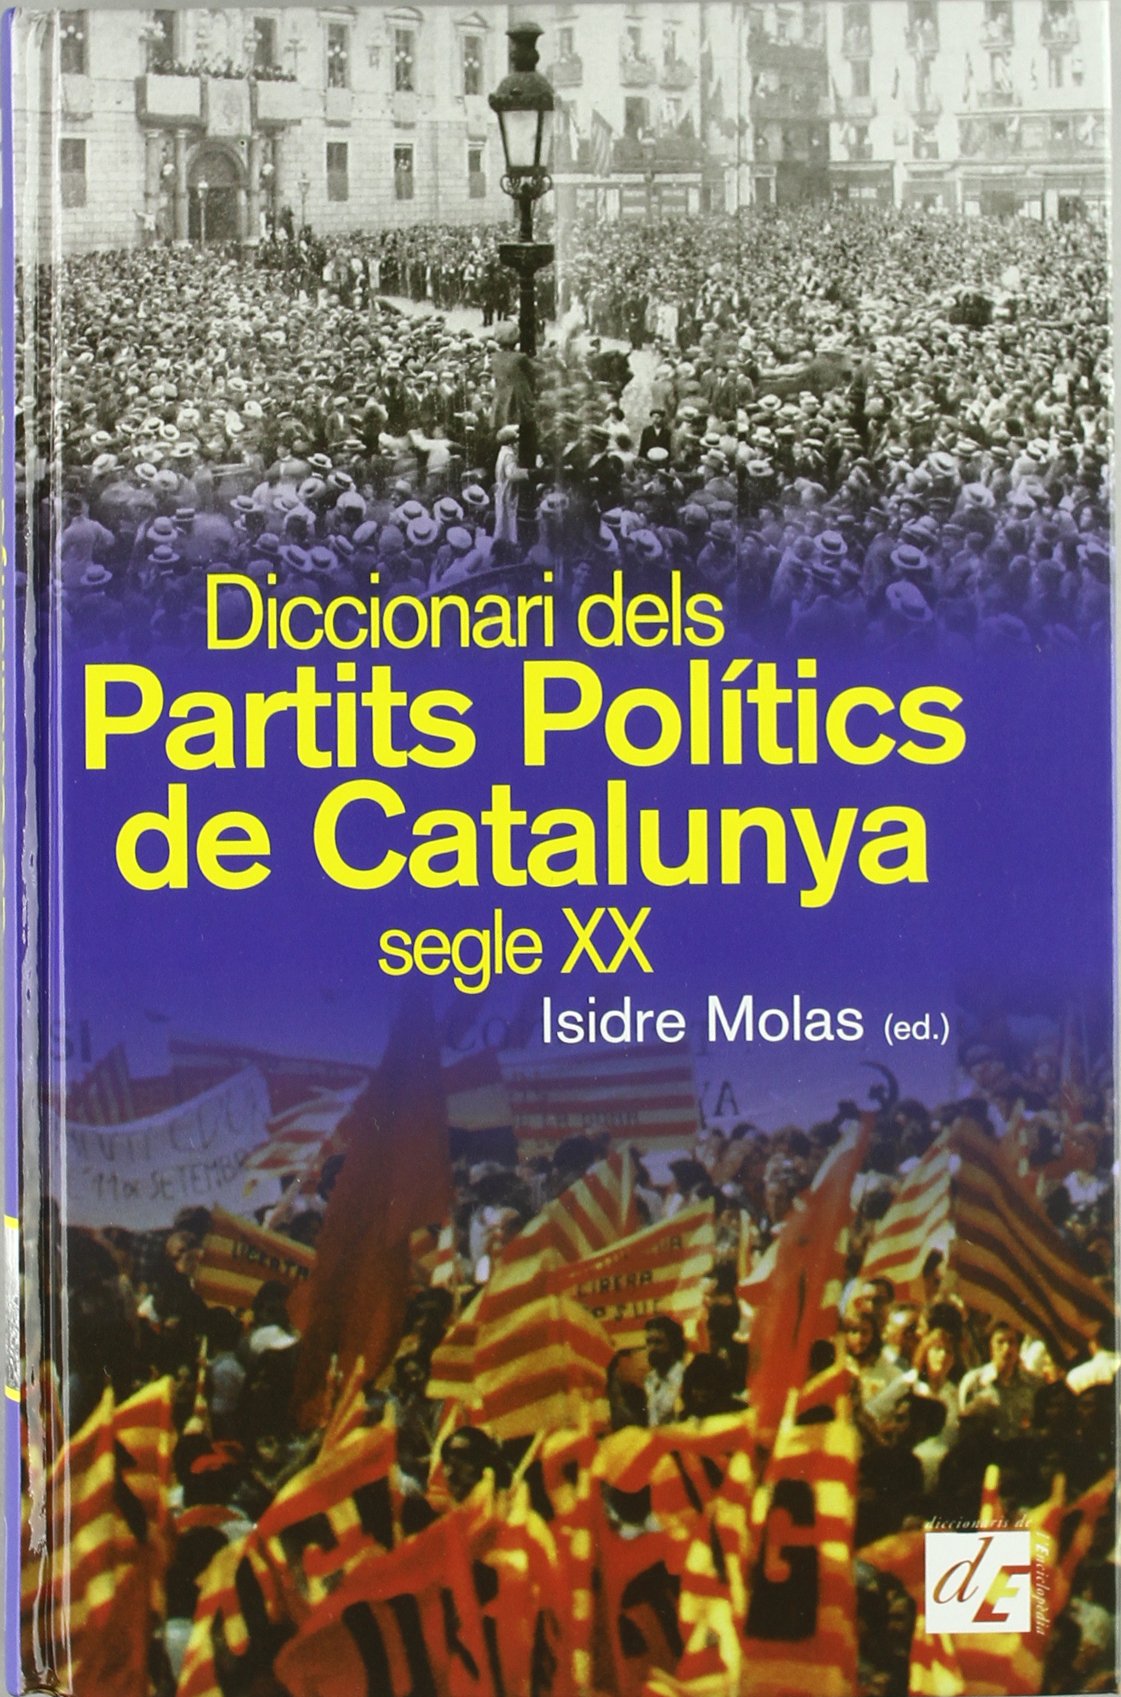 Imagen de portada del libro Diccionari dels partits polítics de Catalunya